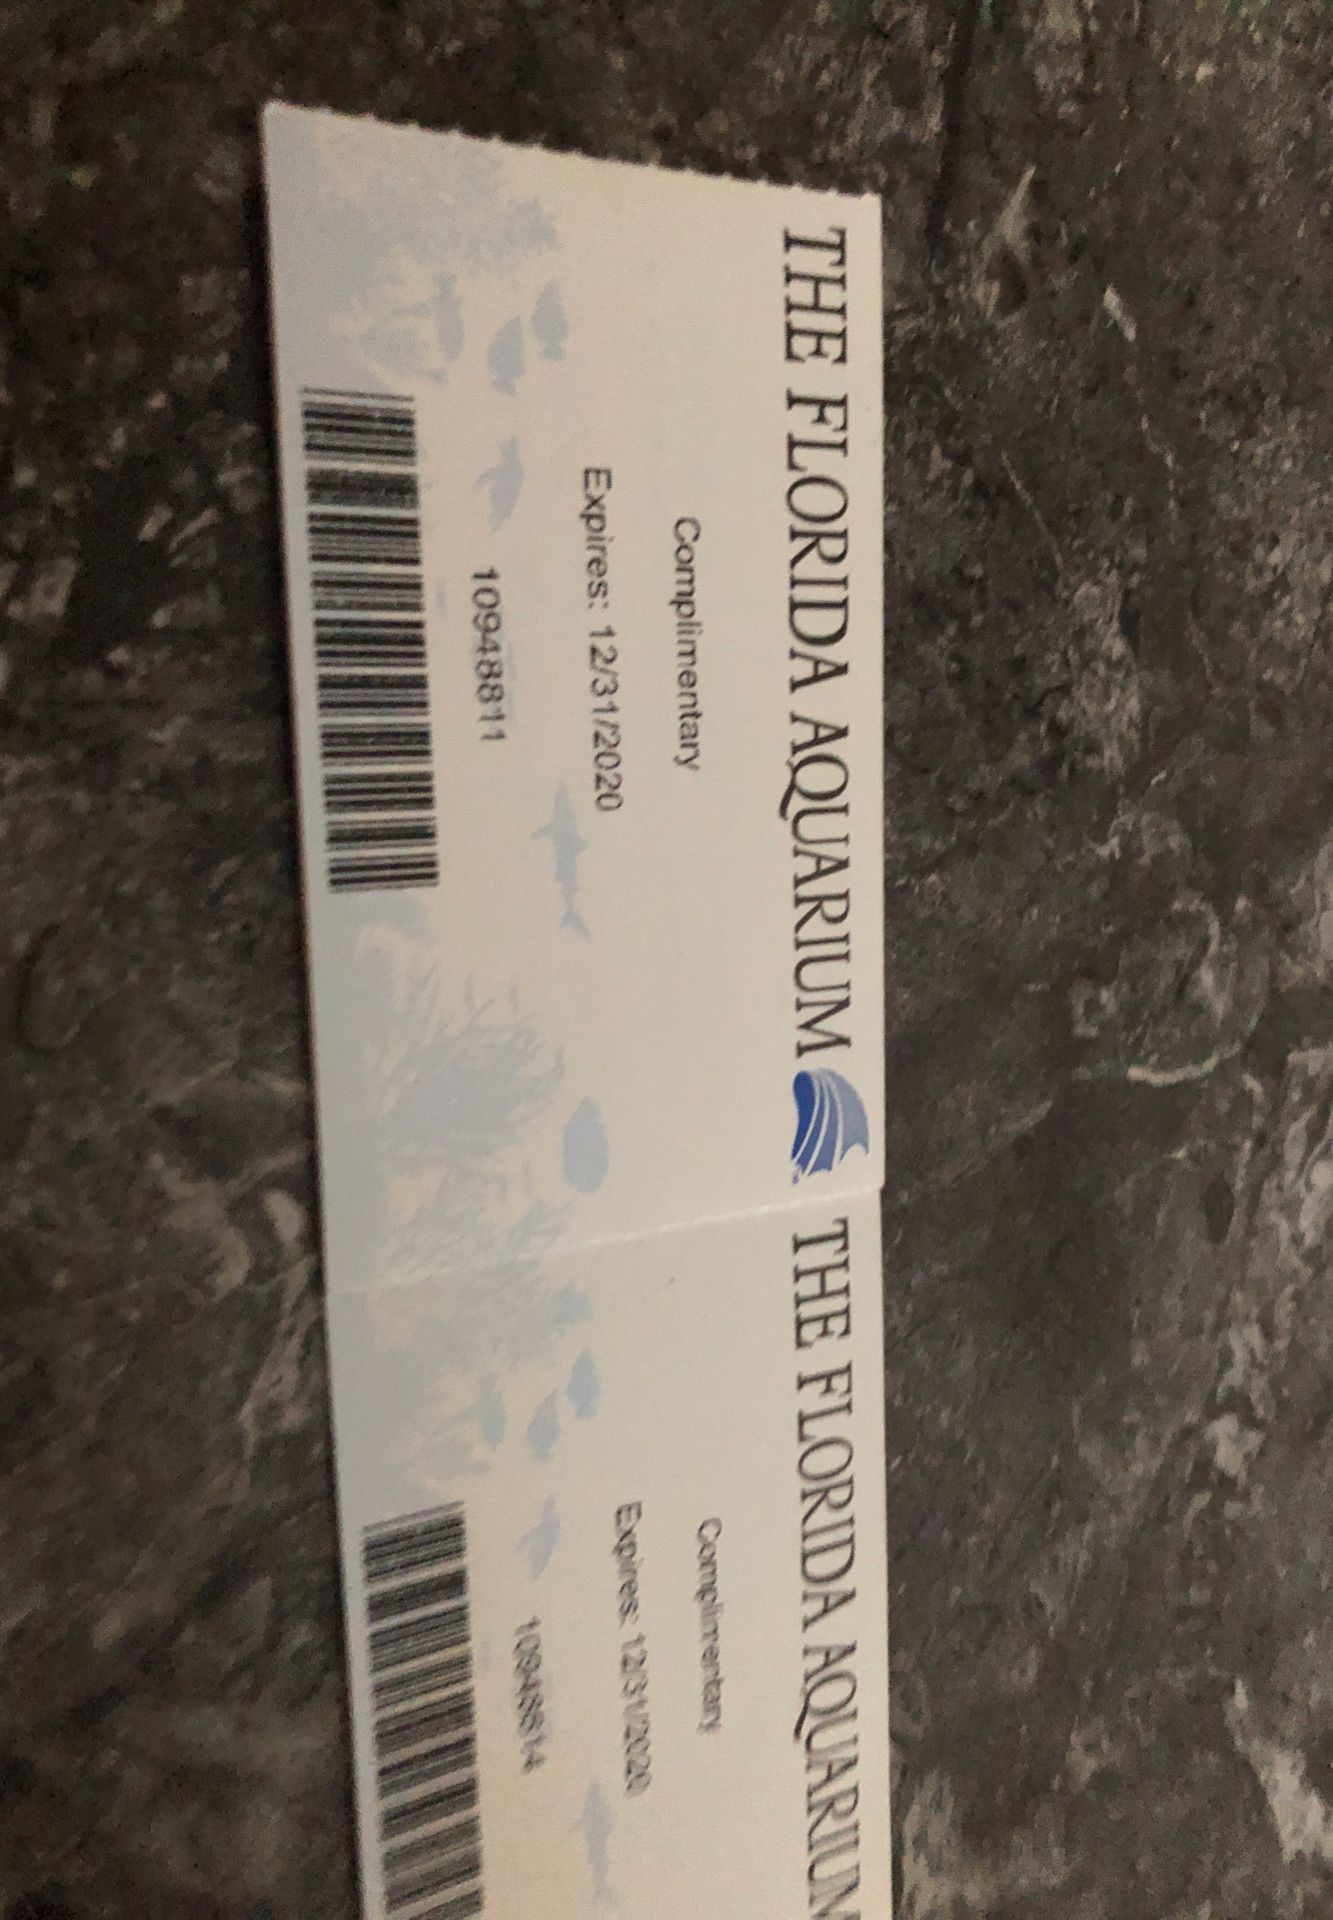 Florida Aquarium tickets